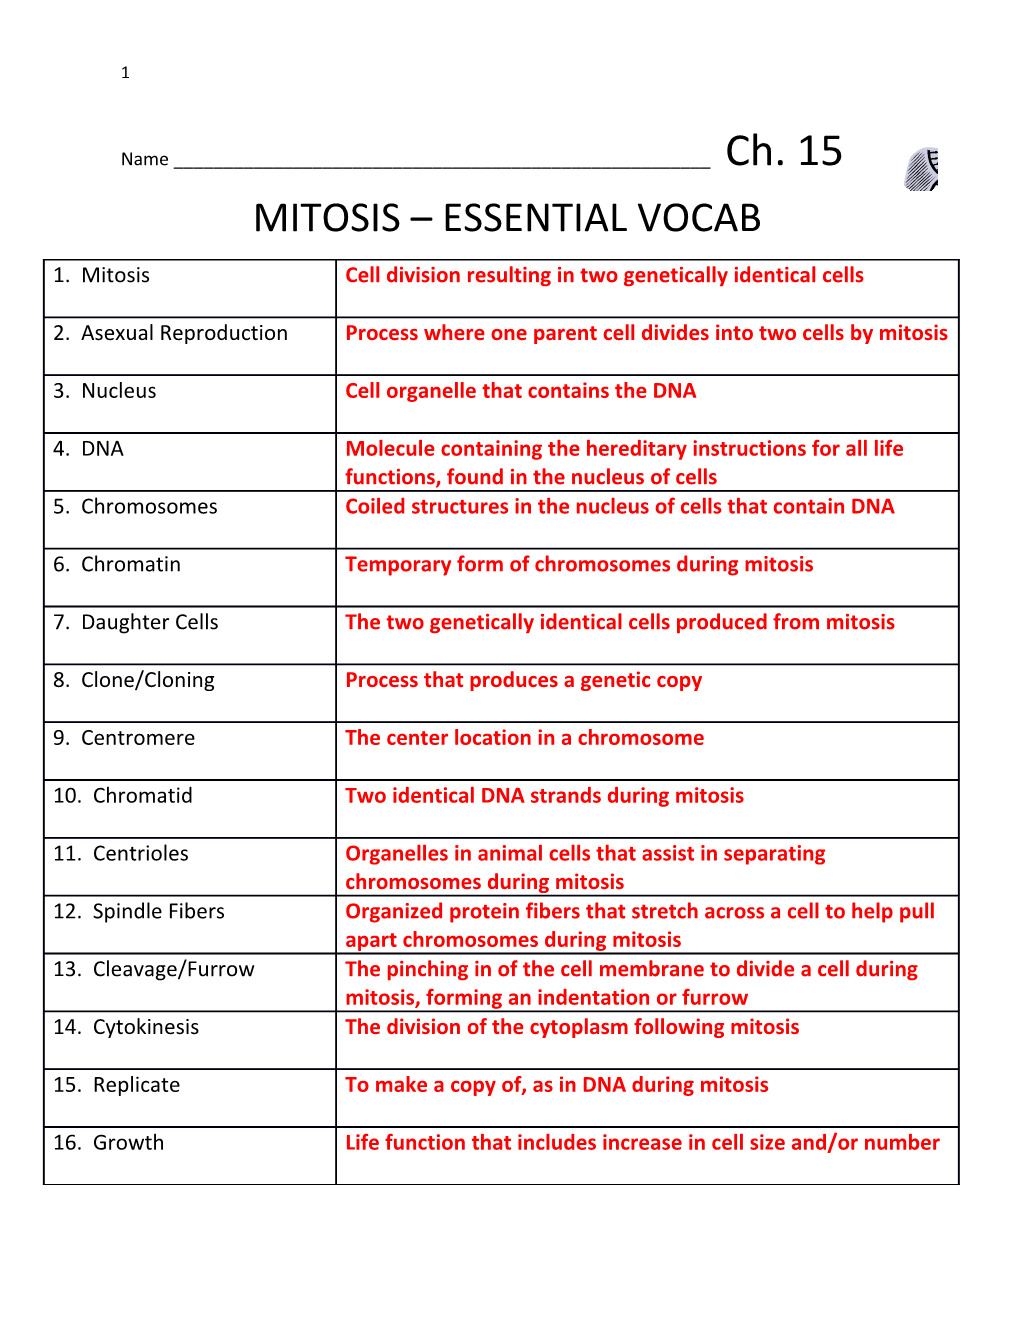 Mitosis Essential Vocab